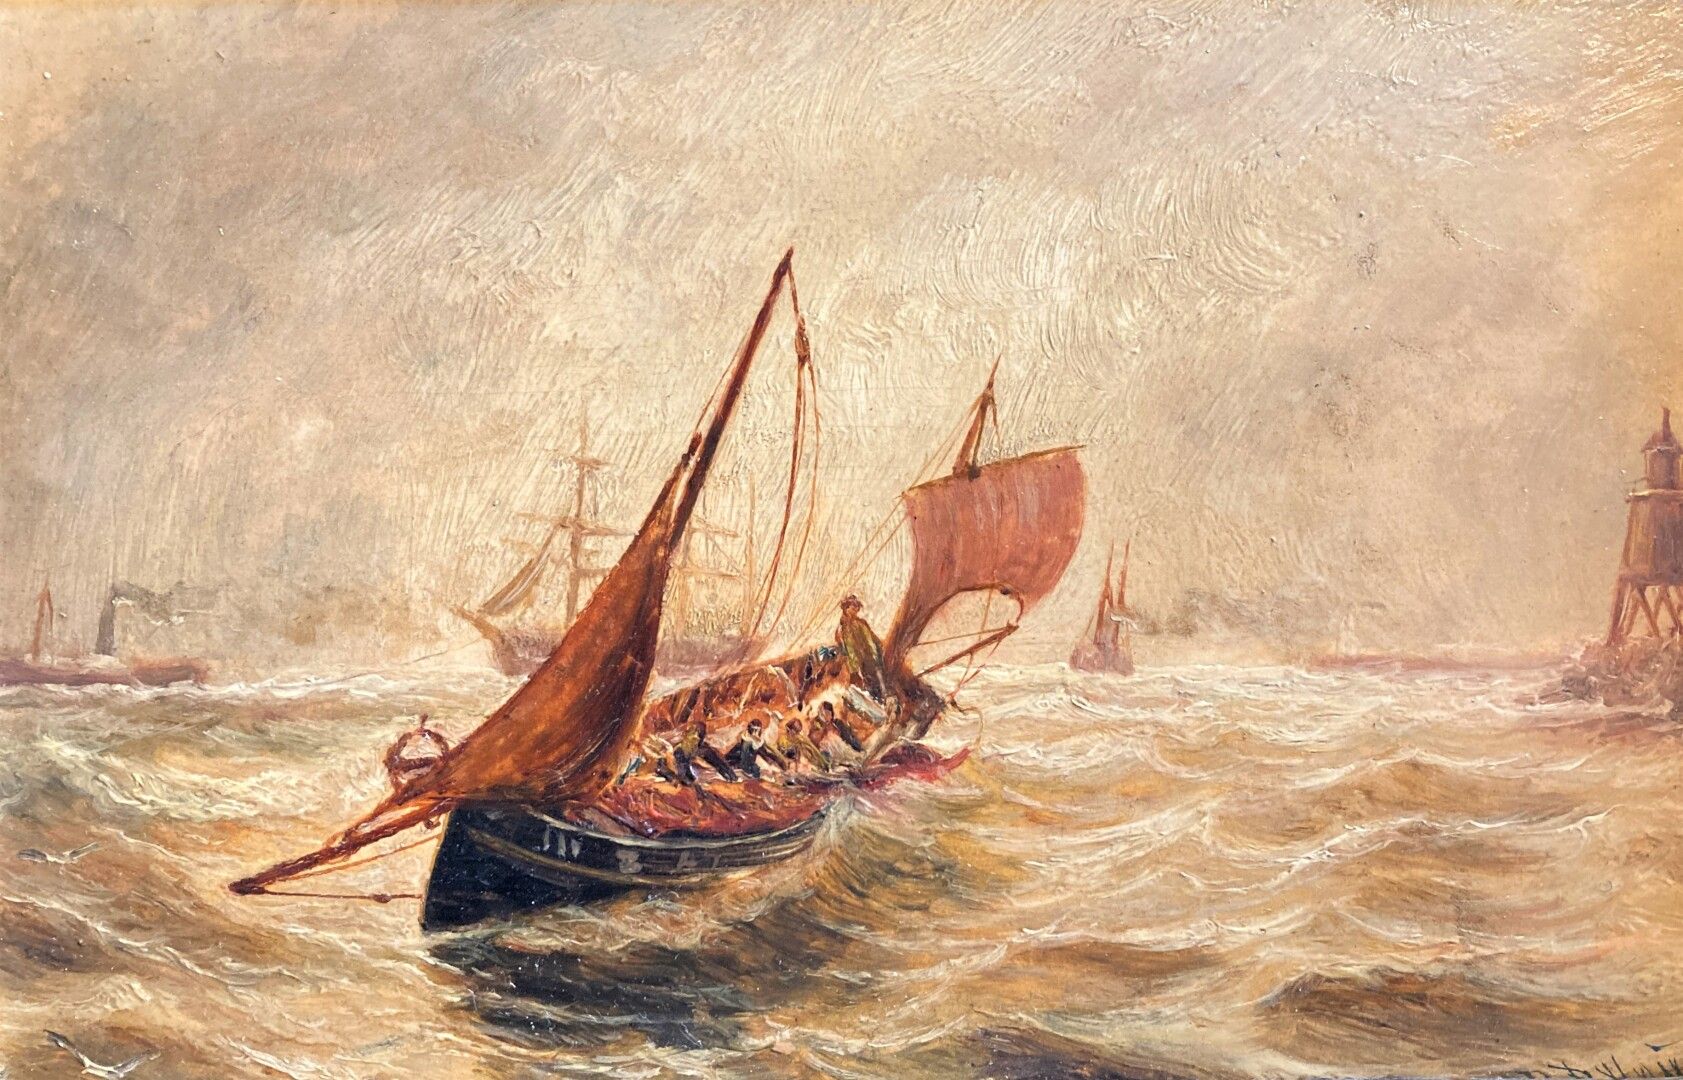 Null Escuela de finales del siglo XIX

Barcos entrando en la tormenta

Barcos en&hellip;